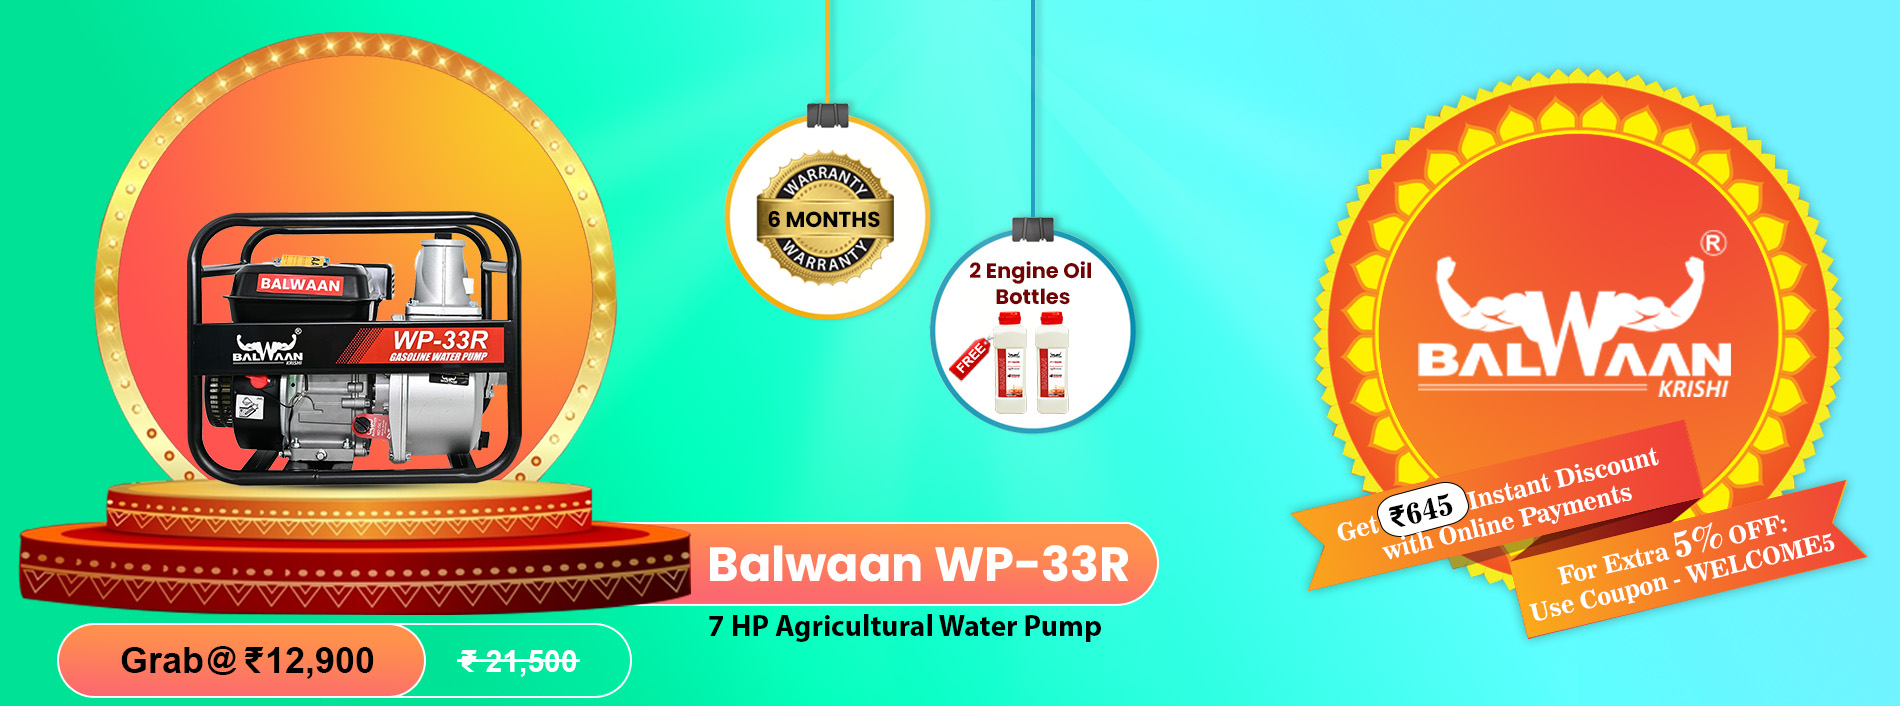 Balwaan_water_pump_WP-33R